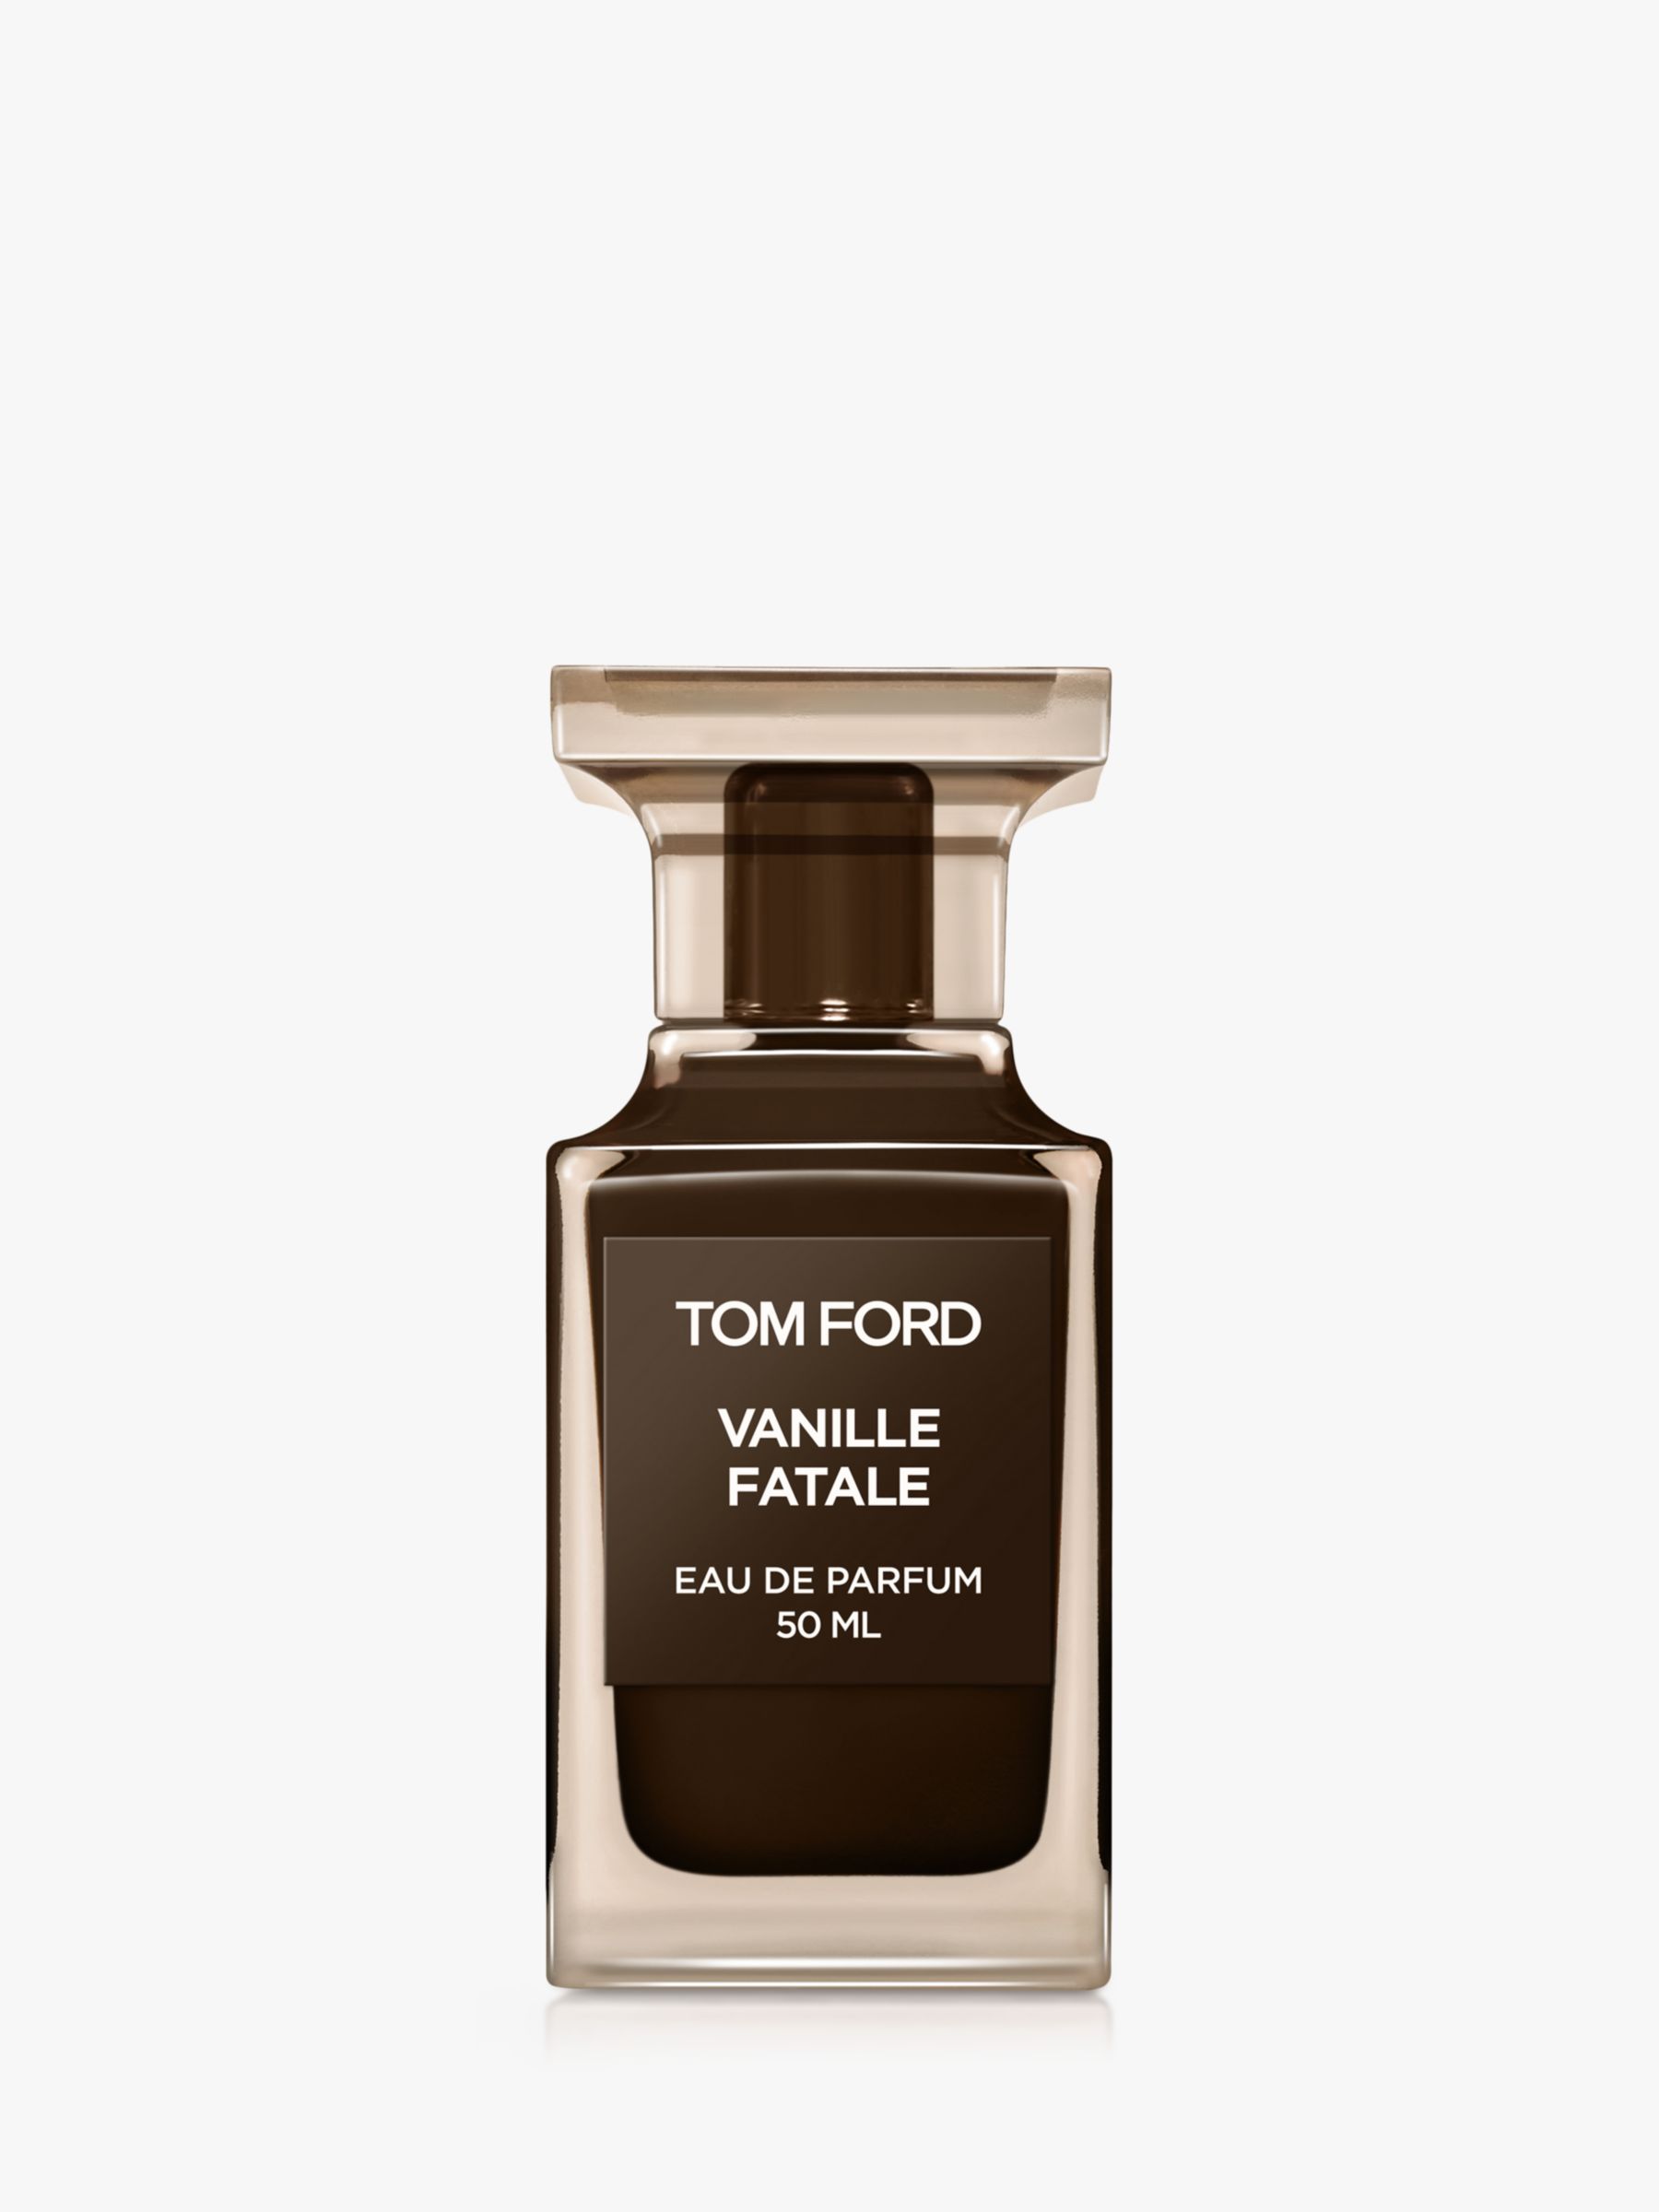 TOM FORD Private Blend Vanille Fatale Eau de Parfum, 50ml 2